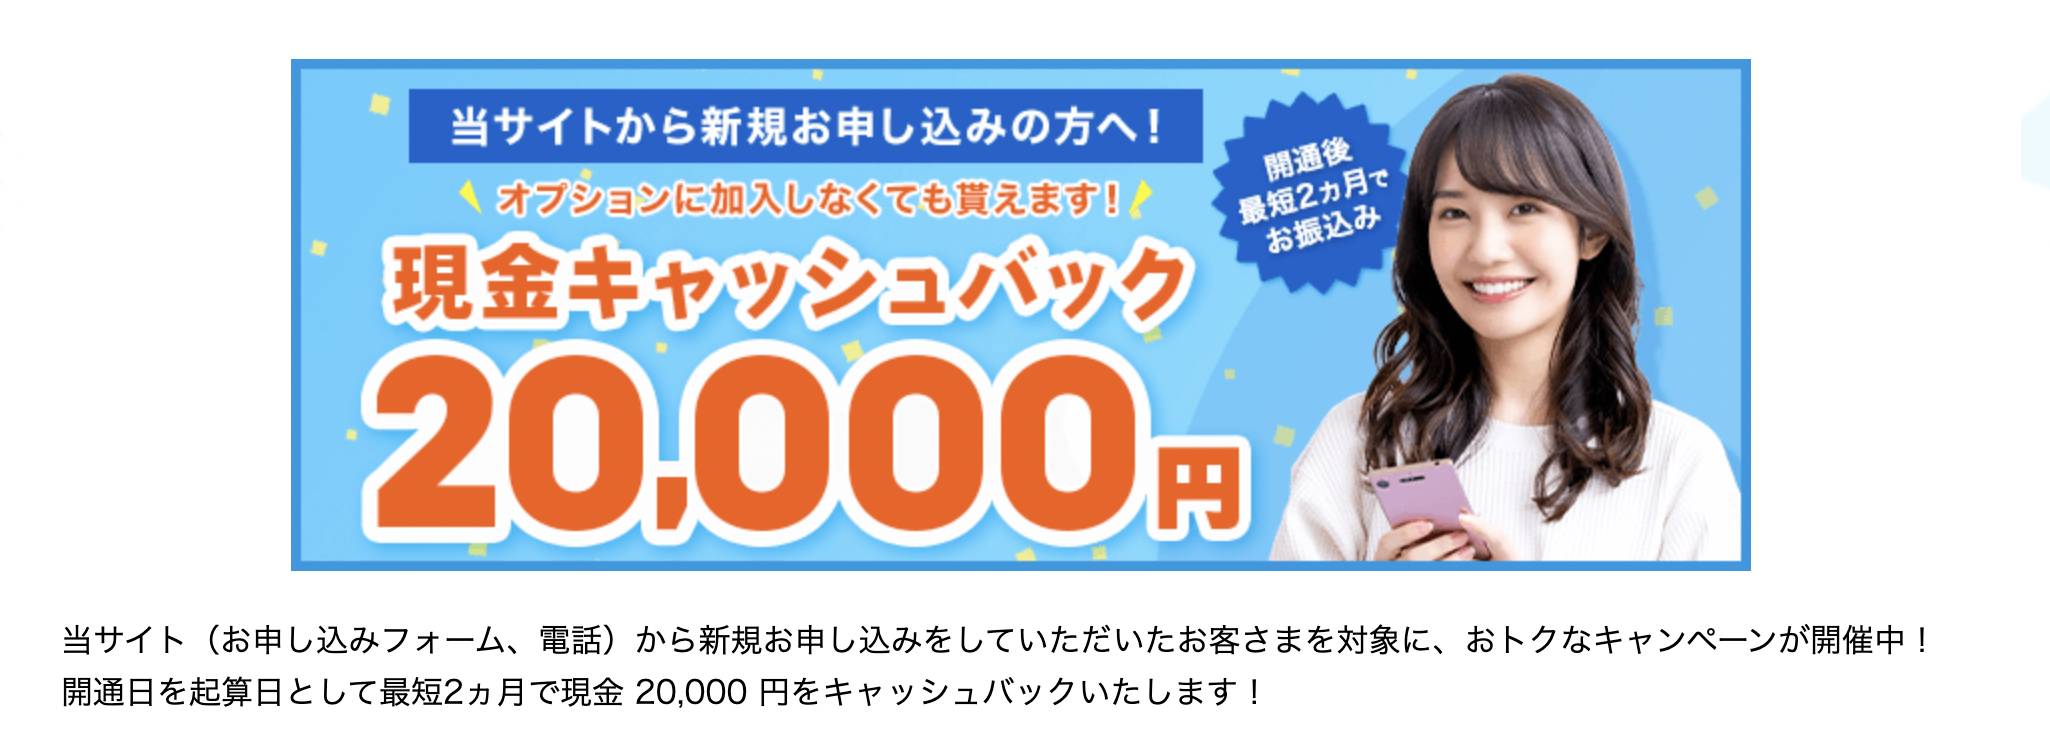 メガエッグキャンペーン20000円キャッシュバック